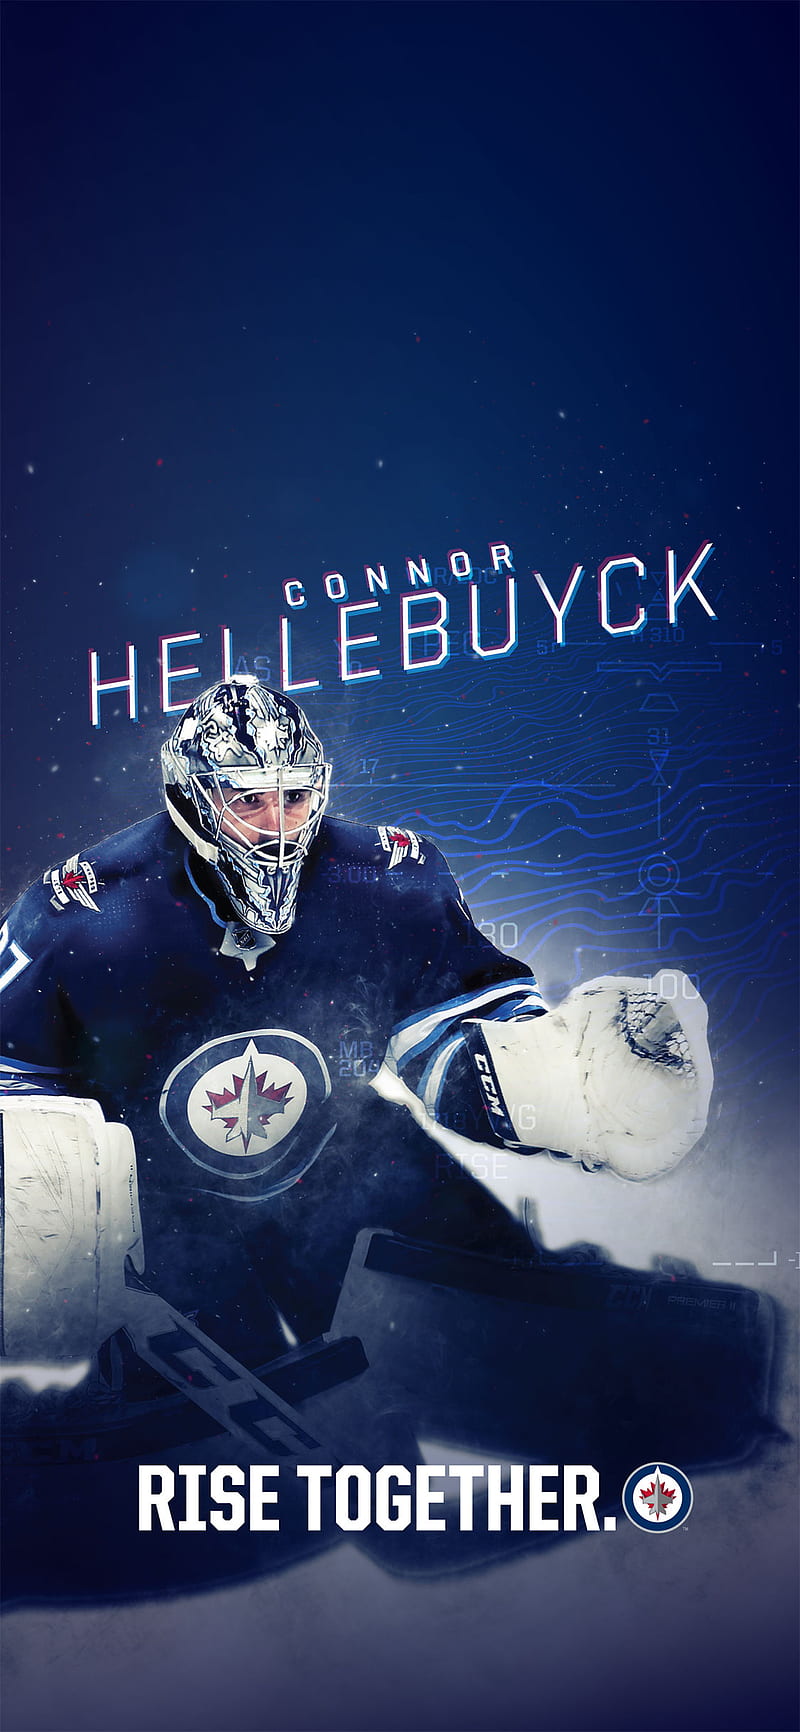 Winnipeg Jets (NHL) iPhone 6/7/8 Lock Screen Wallpaper